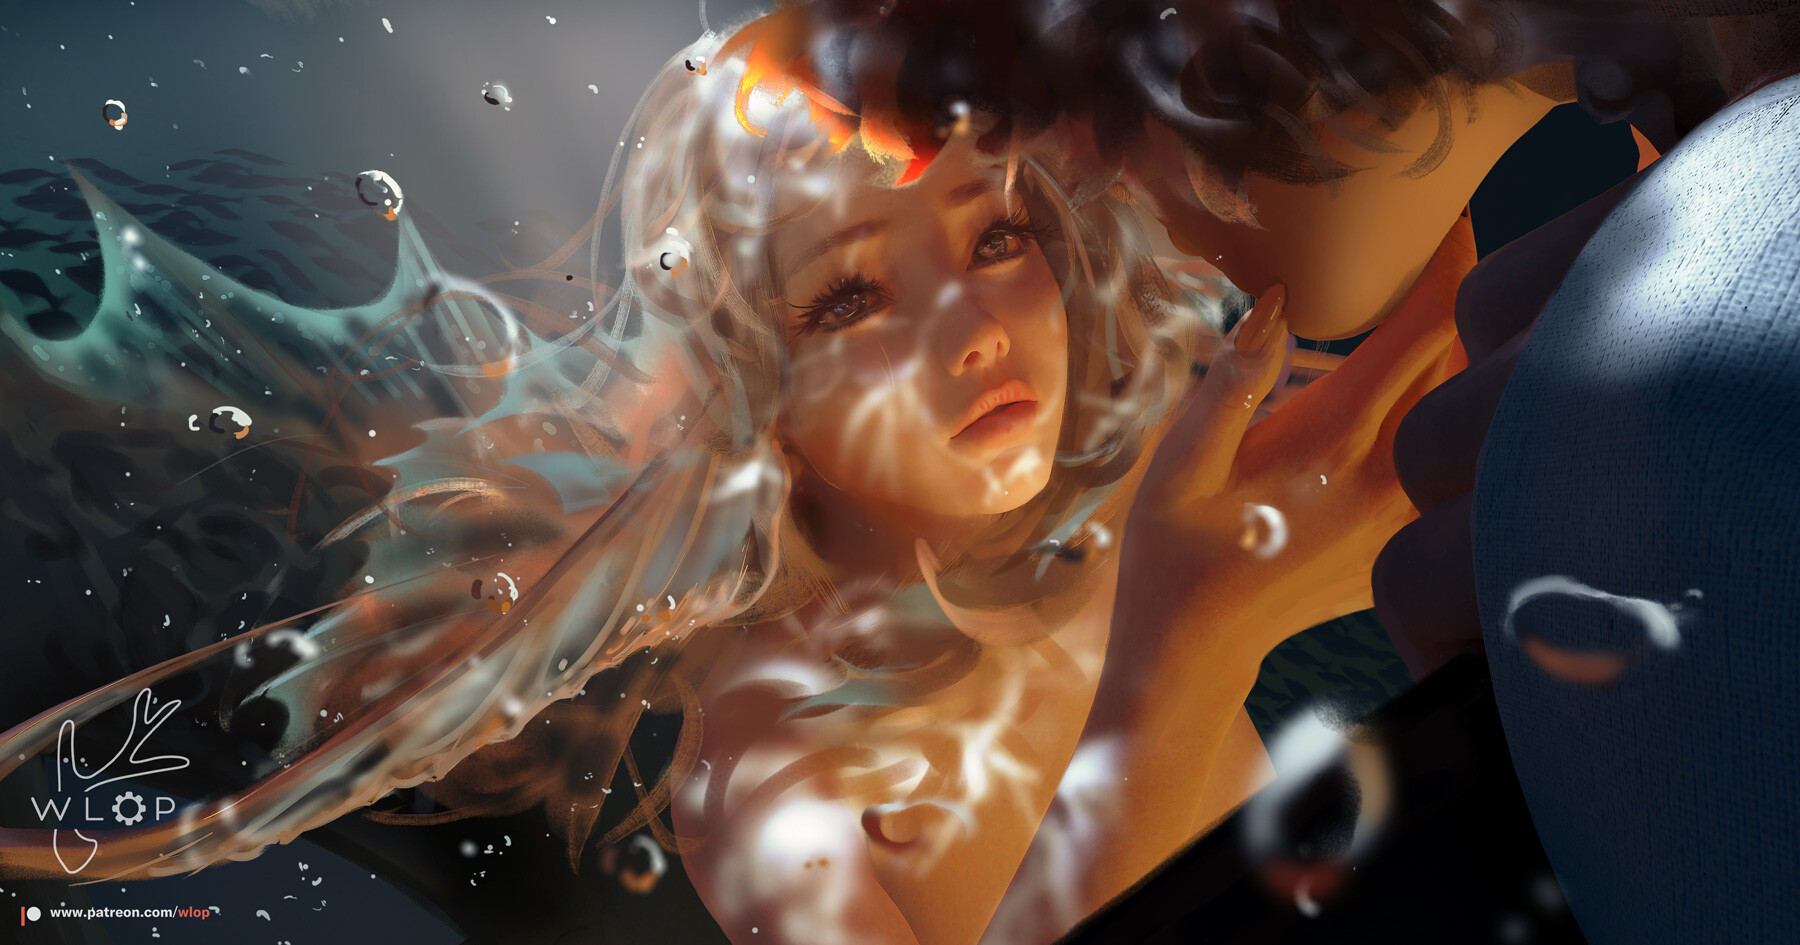 General 1800x945 WLOP digital art women two women fantasy girl fantasy art mermaids